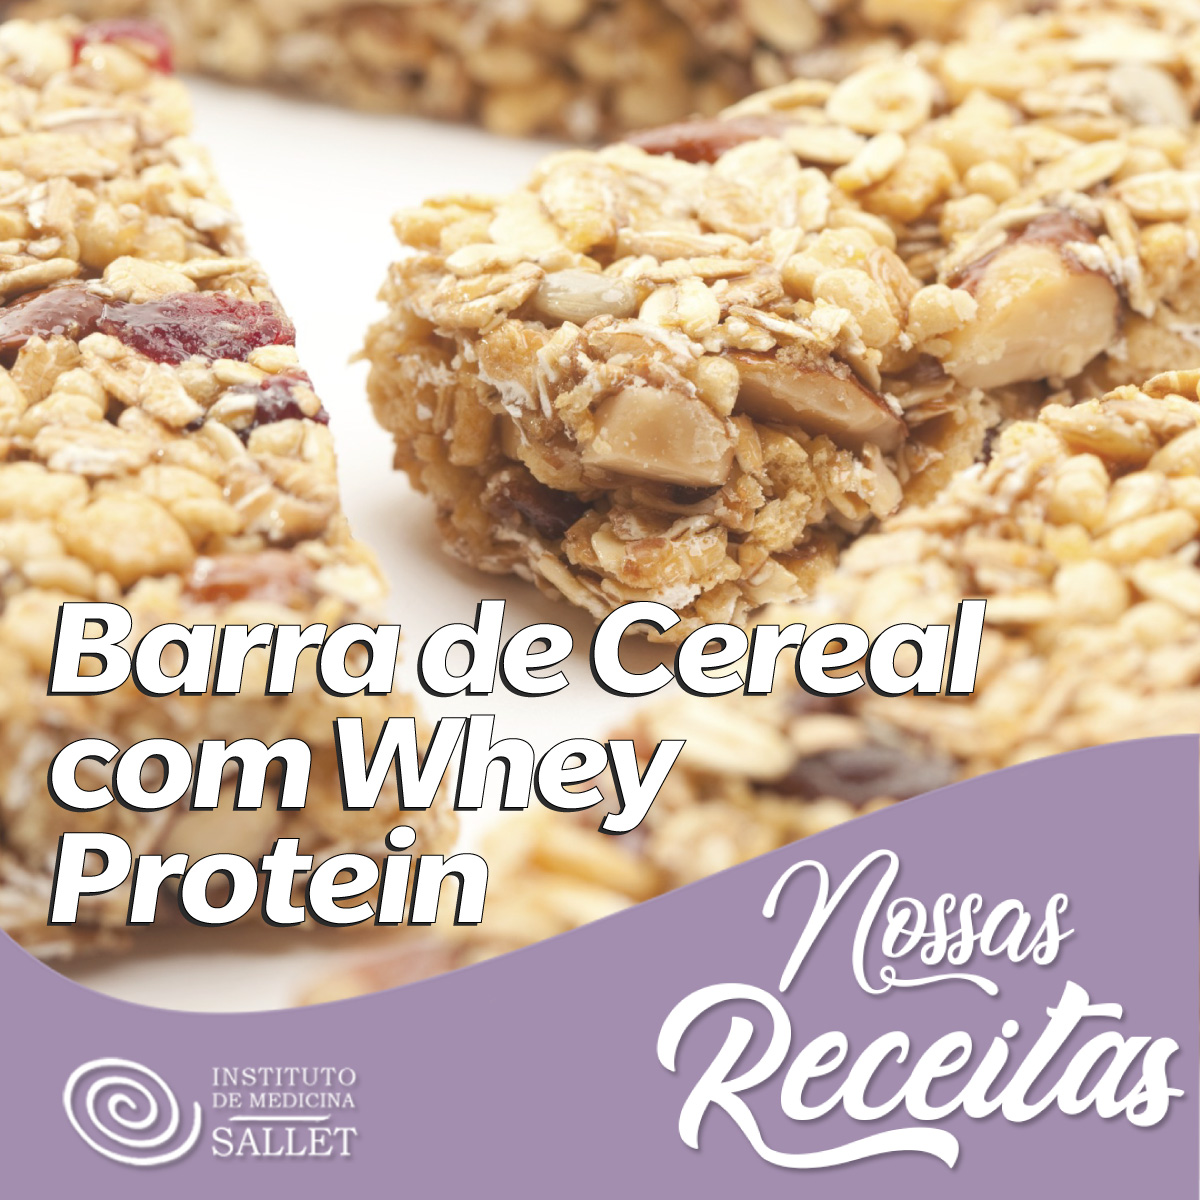 foto indicativa da receita de barra de cereal com whey protein